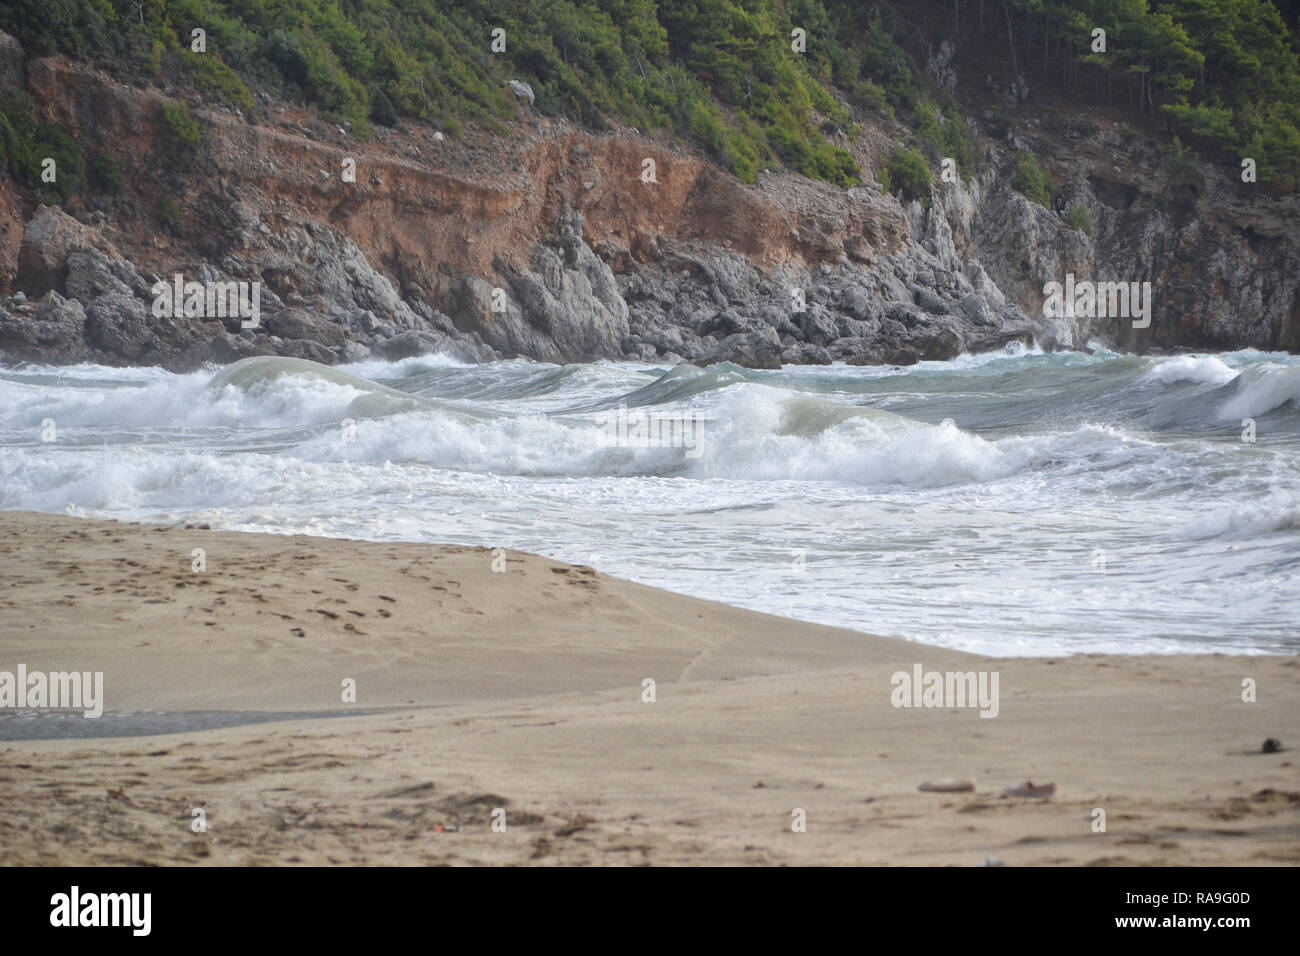 La splendida baia di Cleopatra beach in Alanya Turchia , giornata di vento, onde grandi sul mare Foto Stock